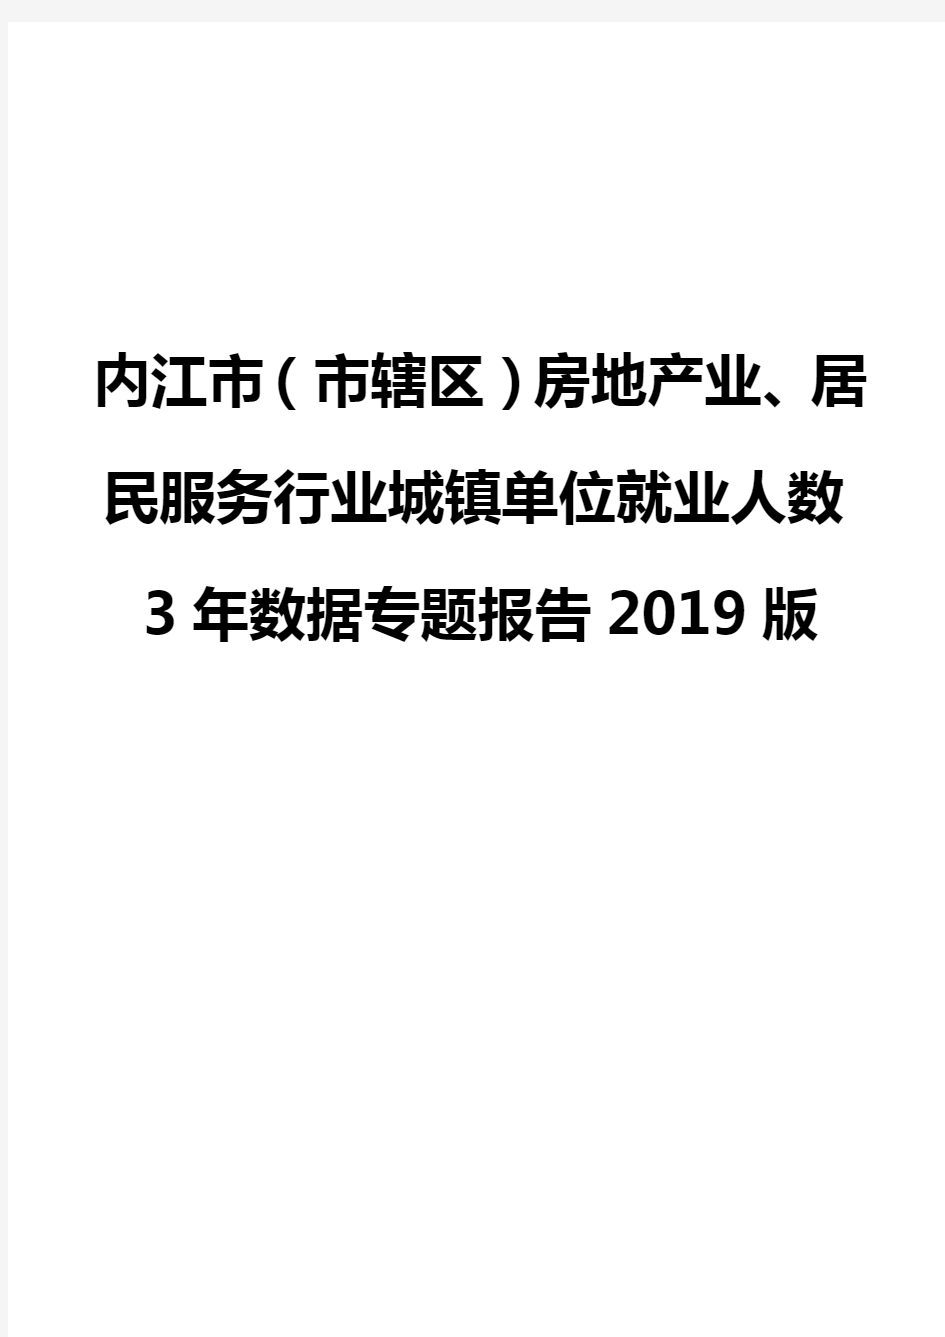 内江市(市辖区)房地产业、居民服务行业城镇单位就业人数3年数据专题报告2019版